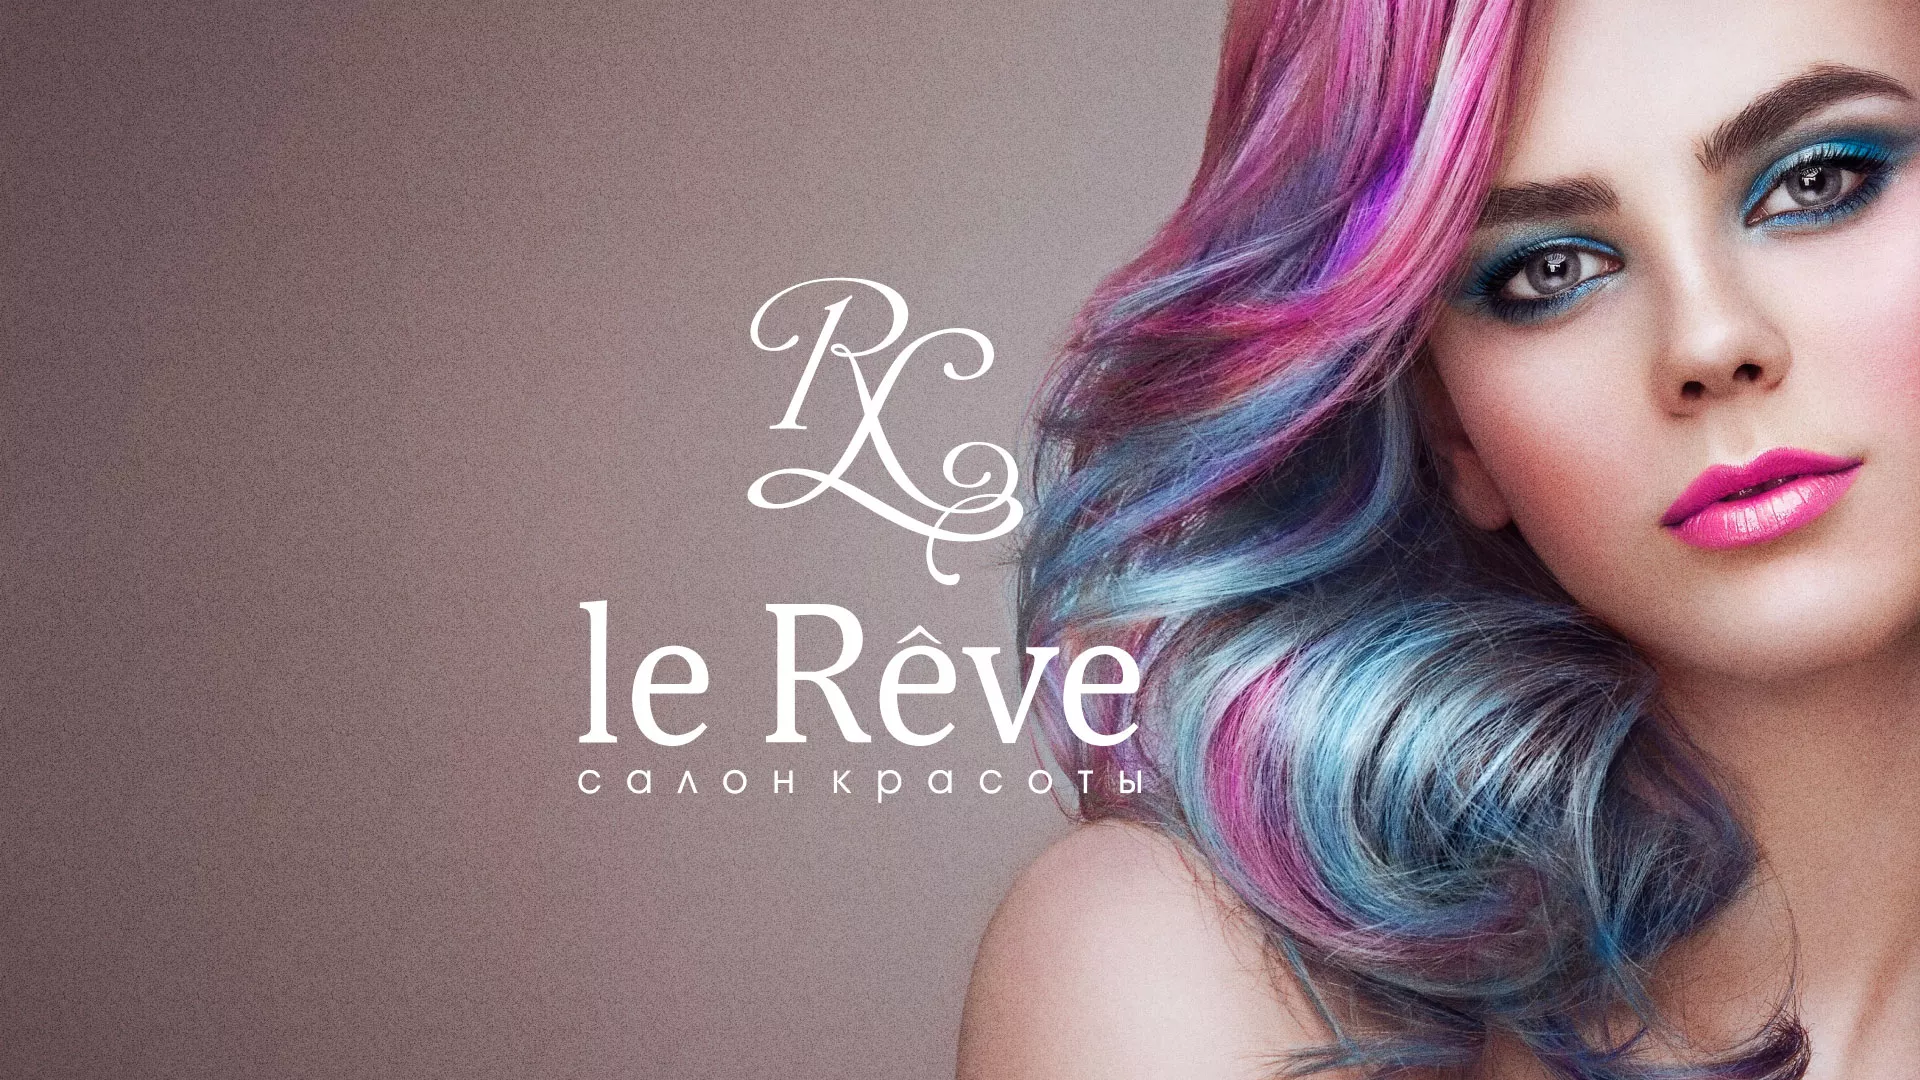 Создание сайта для салона красоты «Le Reve» в Янауле